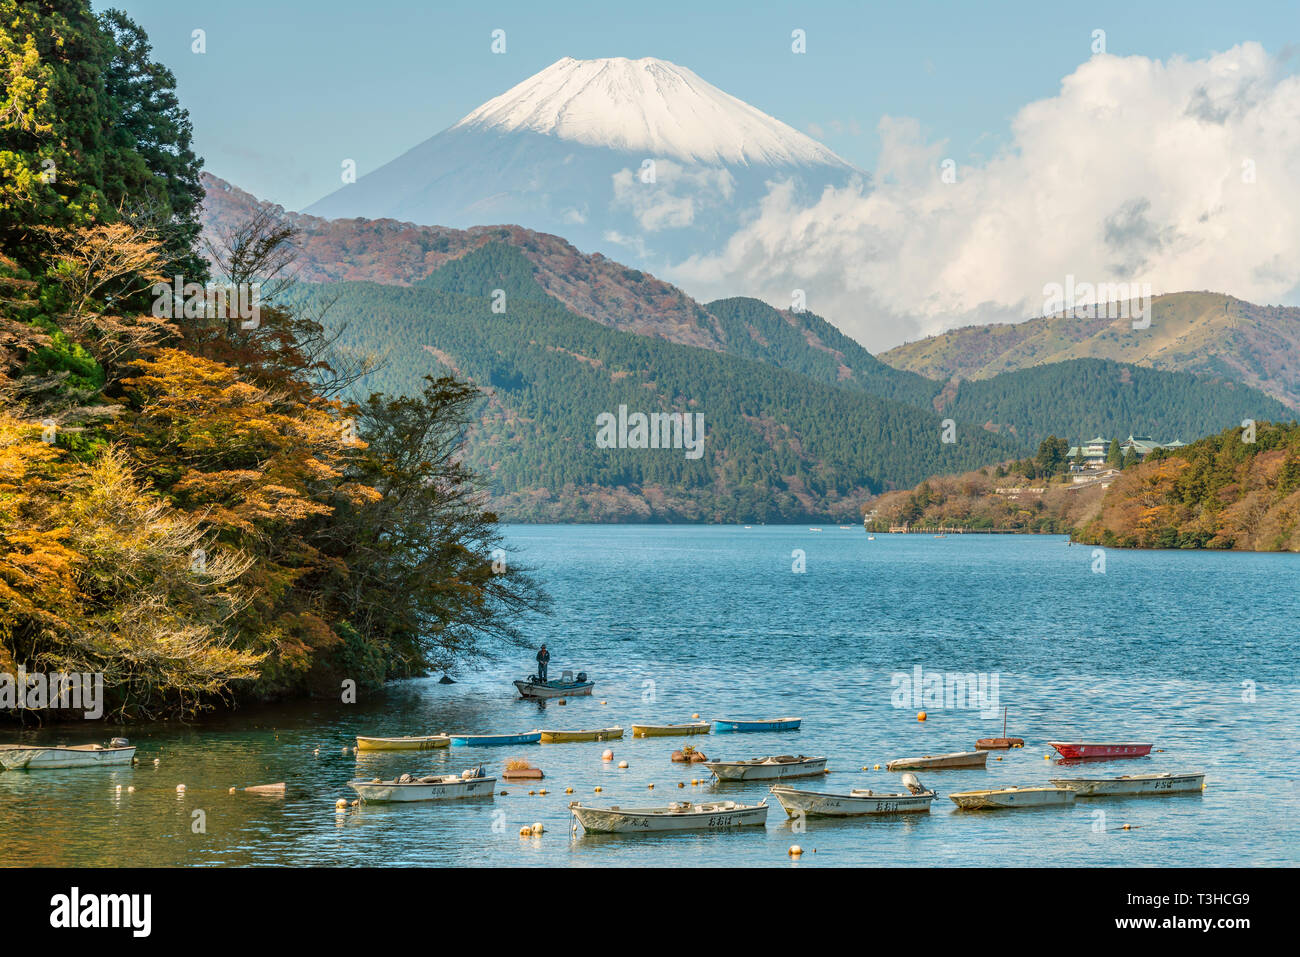 Barcos de pesca en el lago Ashi (Ashinoko) con el Monte Fuji al fondo, Hakone, Japón Foto de stock